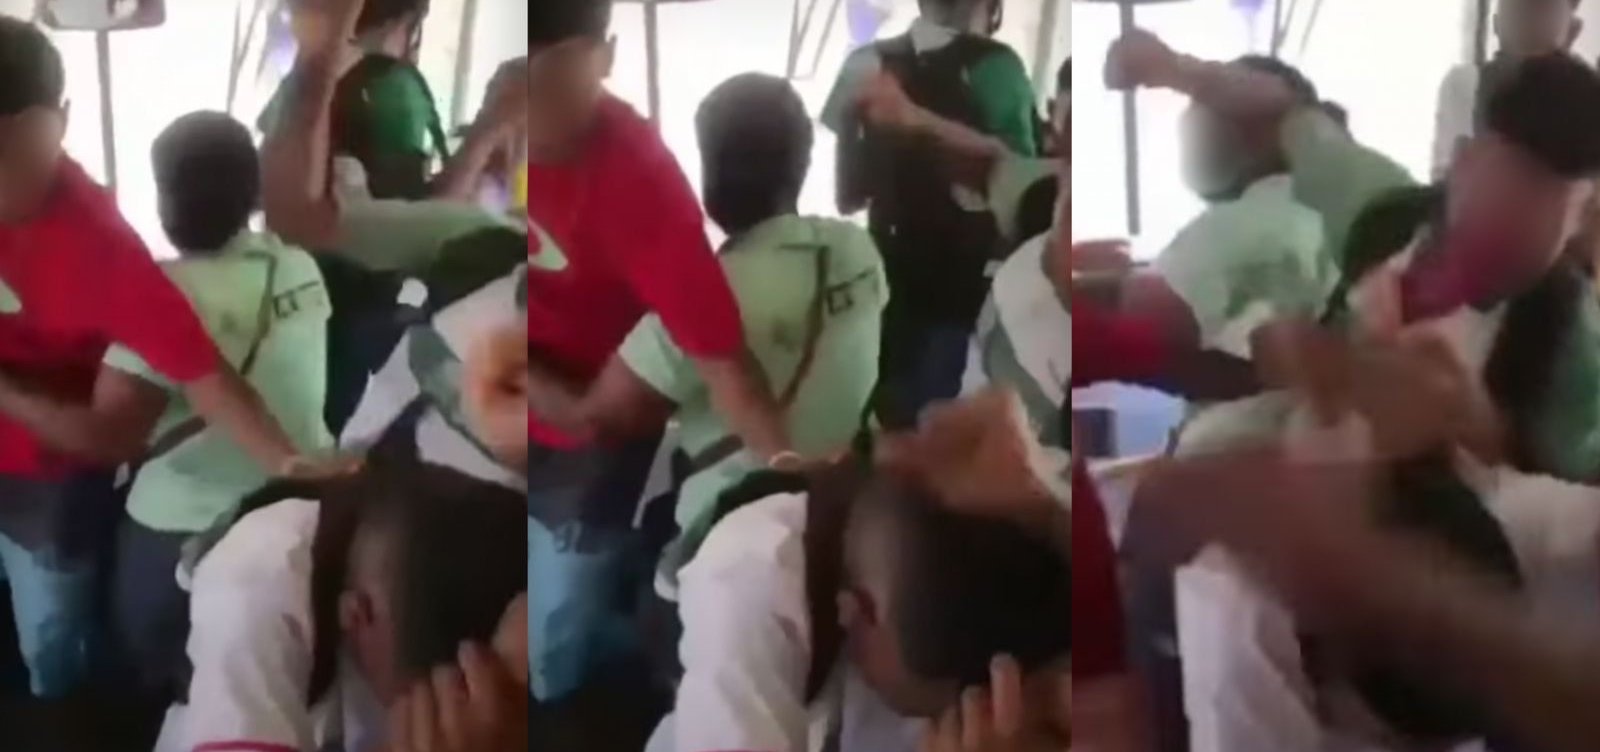 Por homofobia, adolescente é espancado por colegas em ônibus de Camaçari